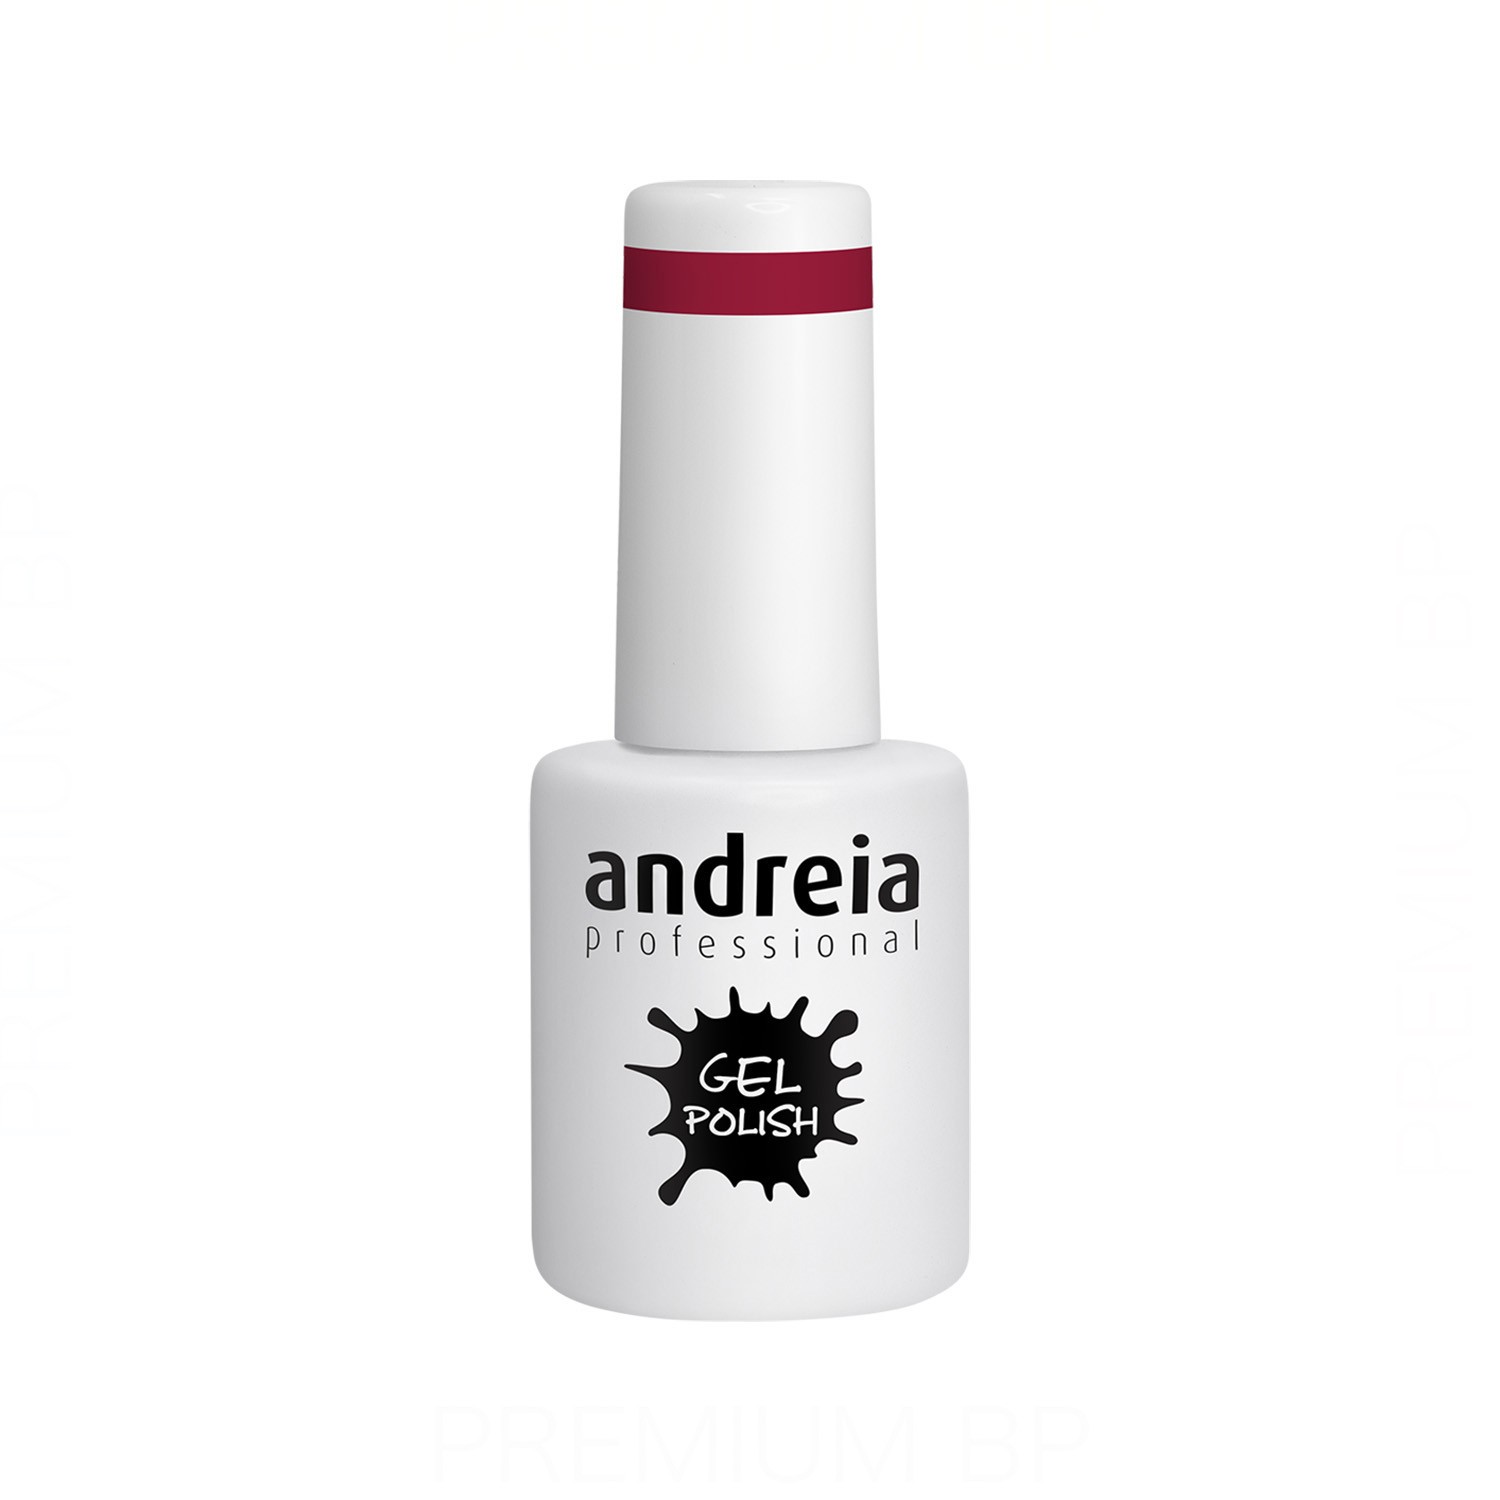 Andreia - Andreia professional gel polish esmalte semipermanente 10,5 ml color 211, esmalte semipermanente con duración de 4 semanas color rojo rubí